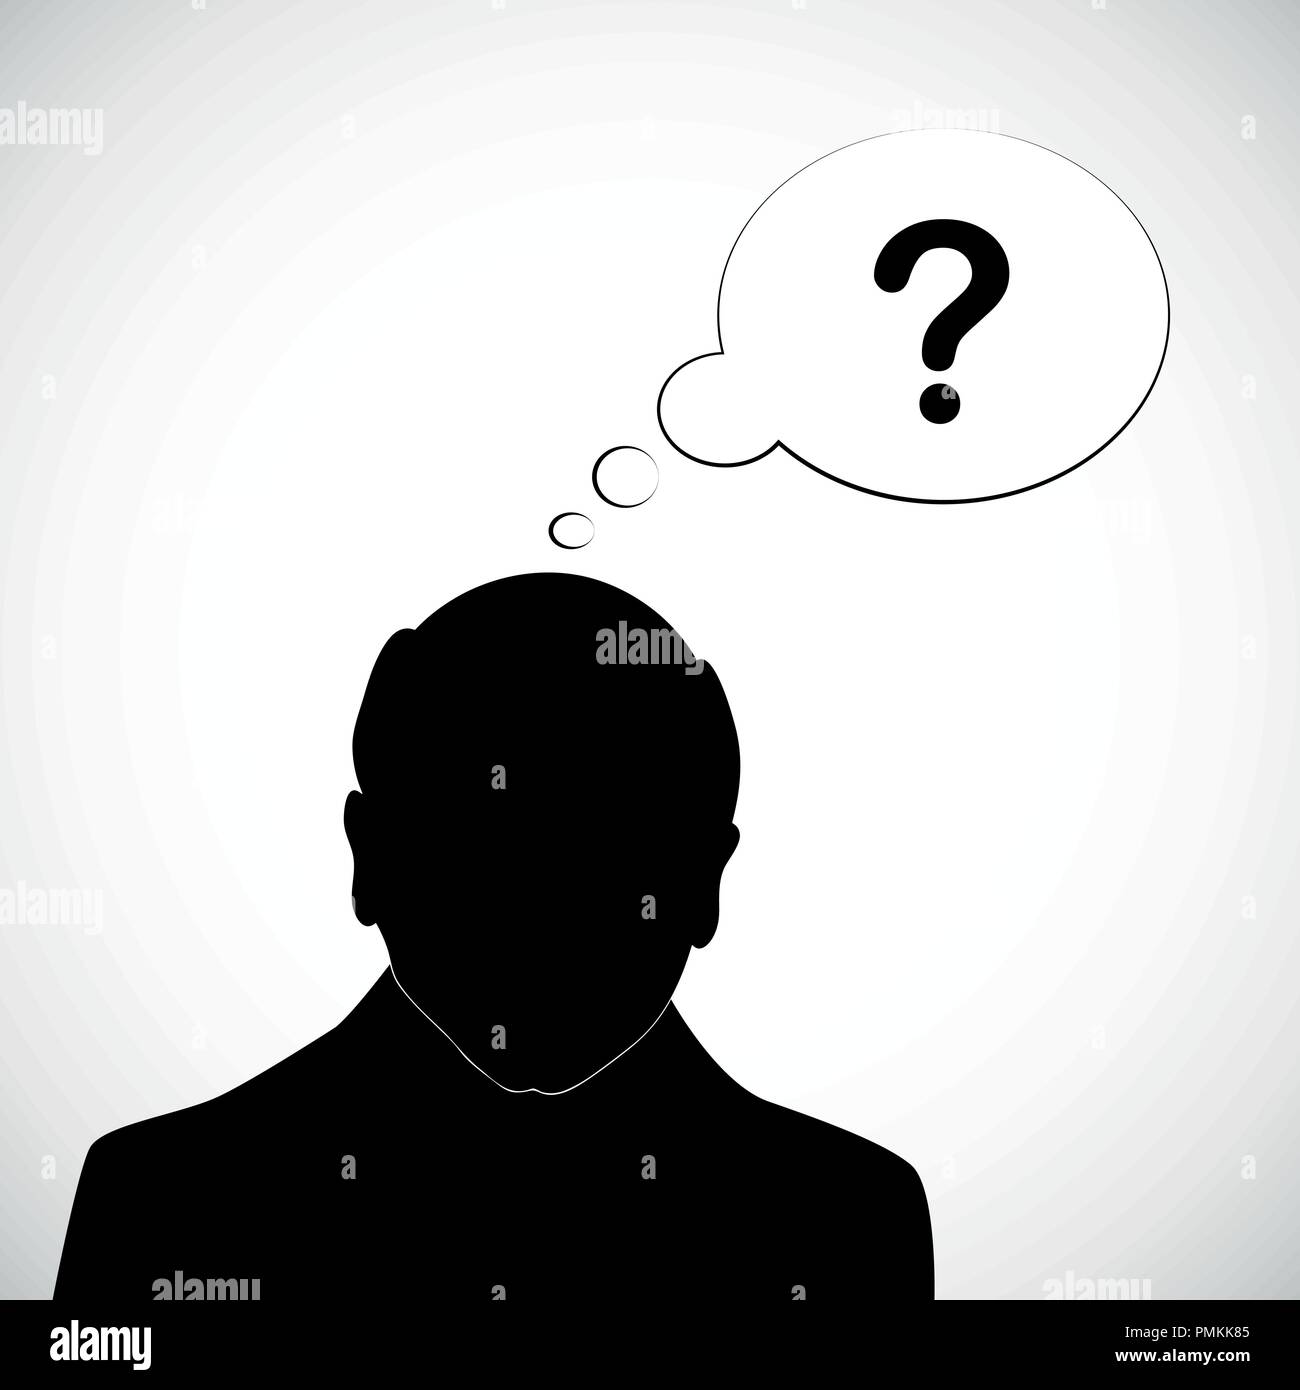 Alter Mann silhouette menschlichen Kopf mit Fragezeichen Alzheimer Demenz Vektor-illustration EPS 10. Stock Vektor